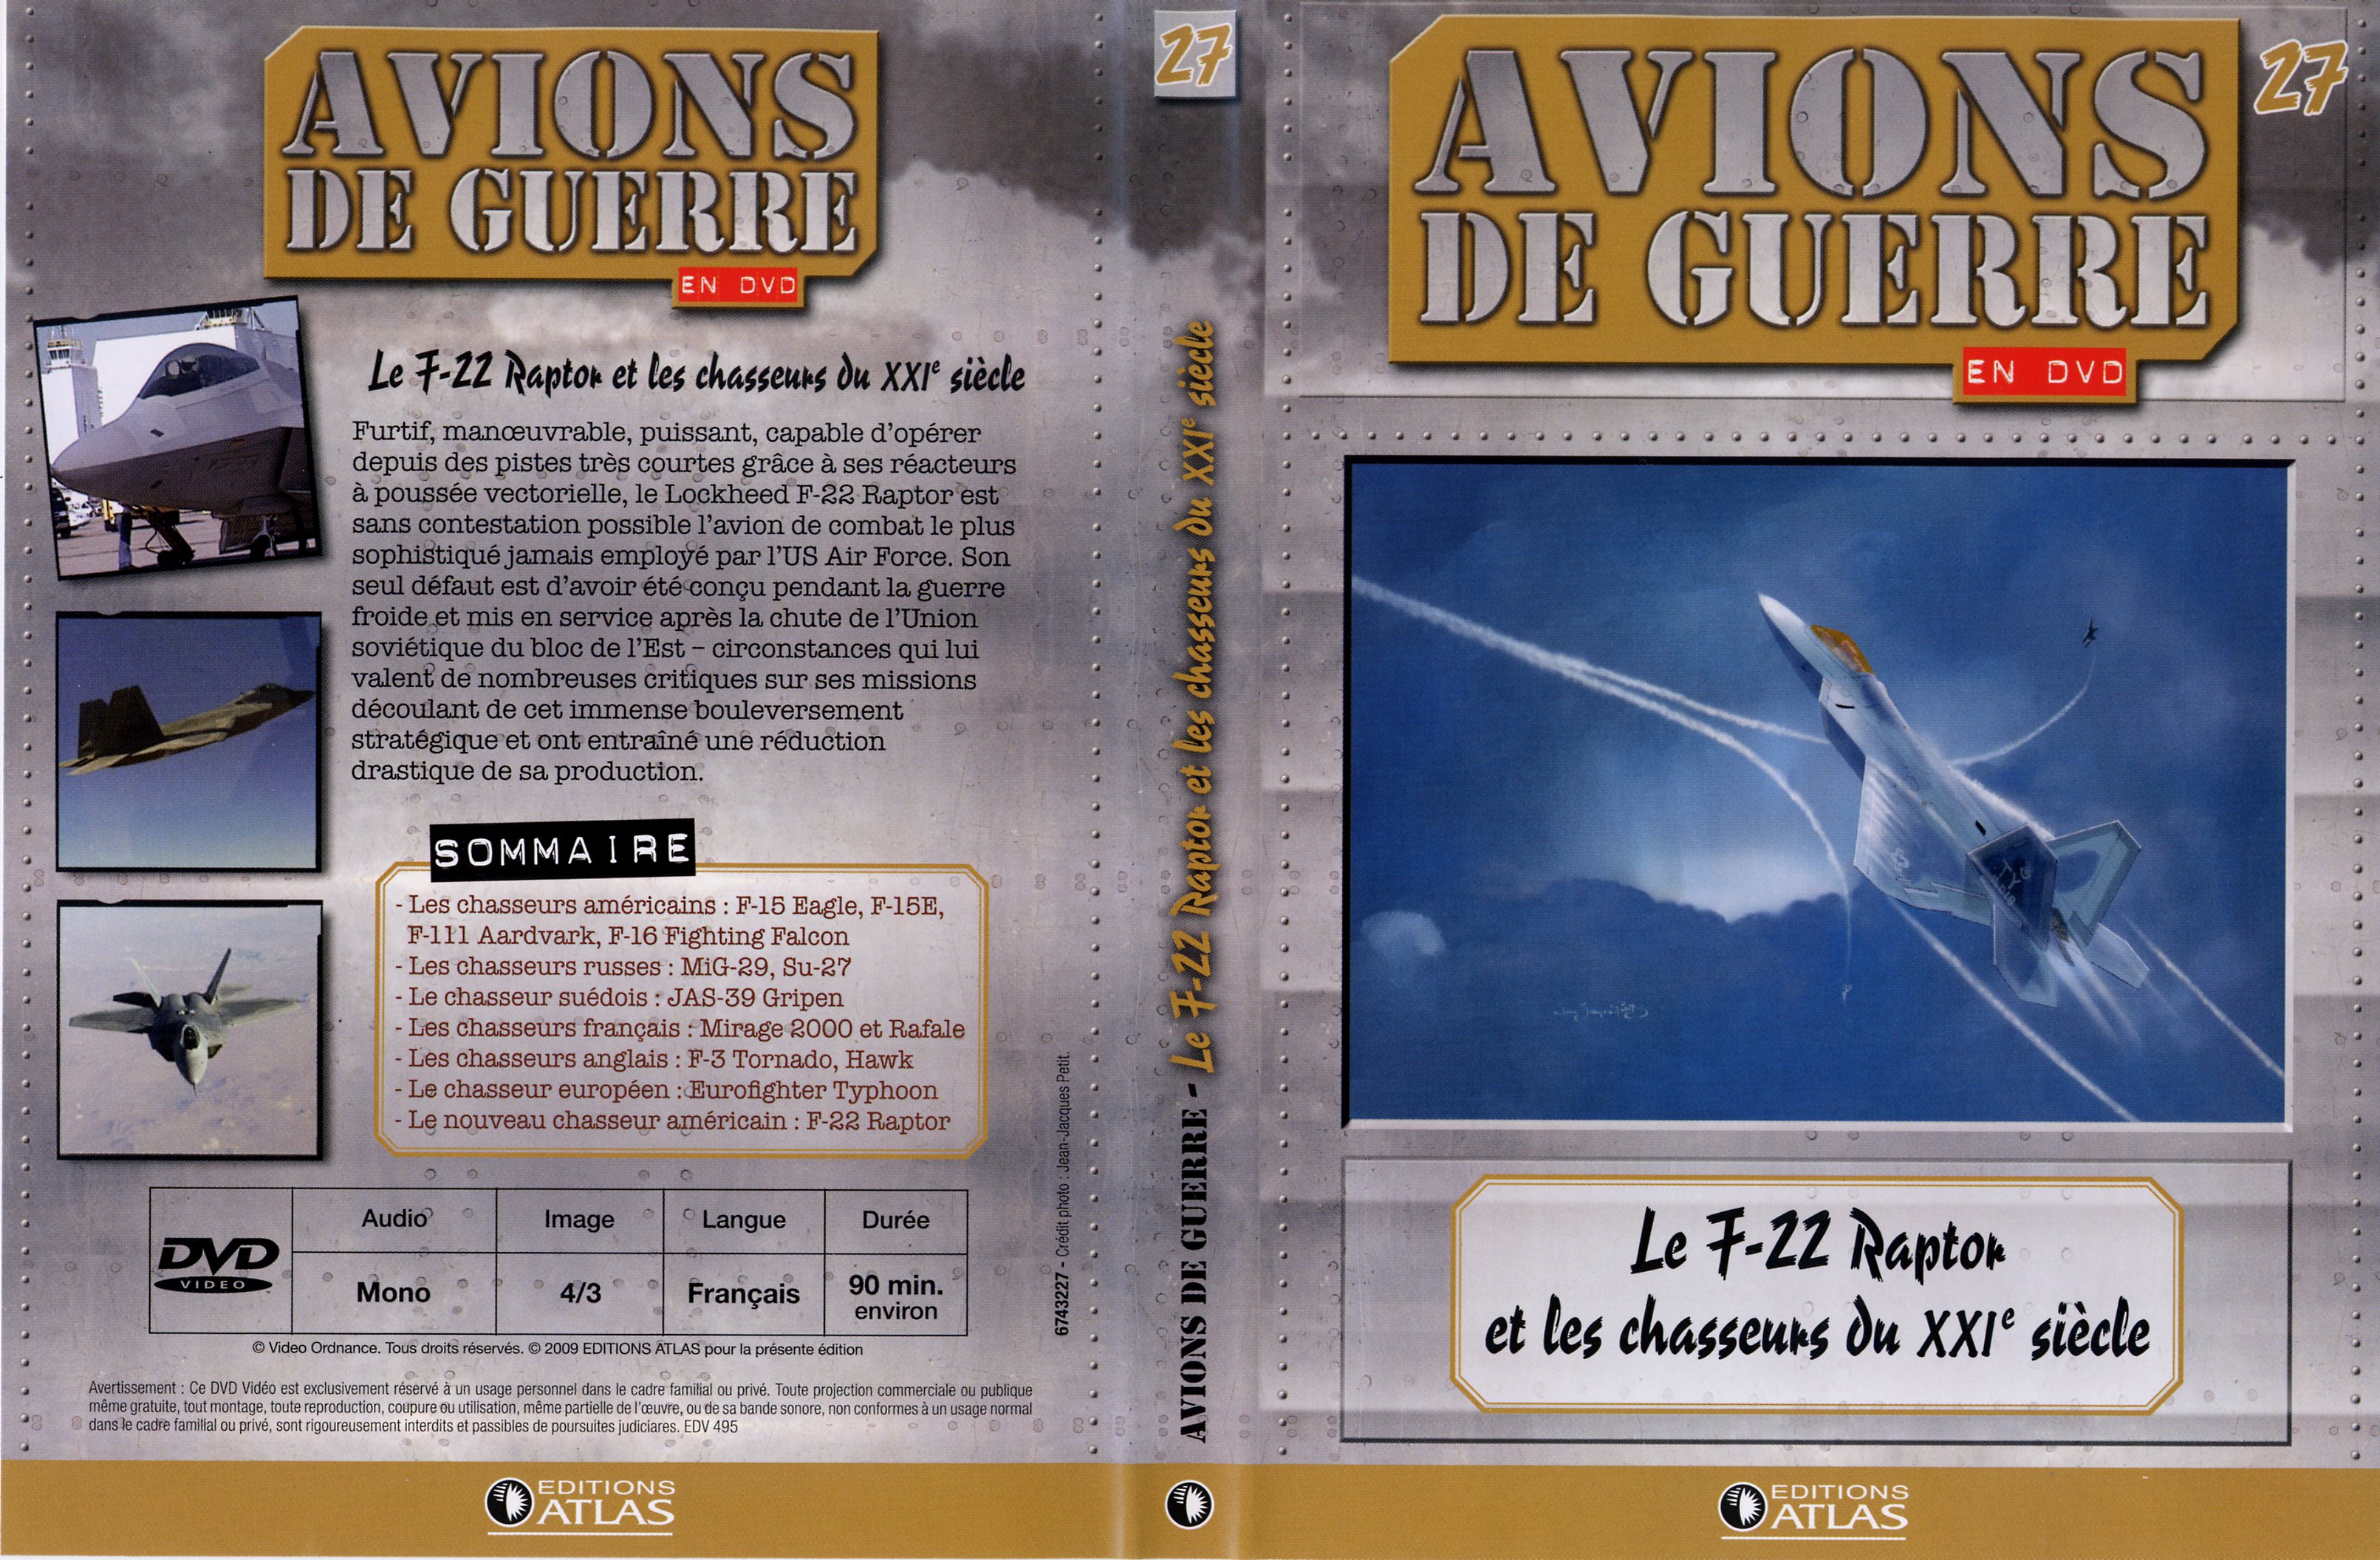 Jaquette DVD Avions de guerre en DVD vol 27